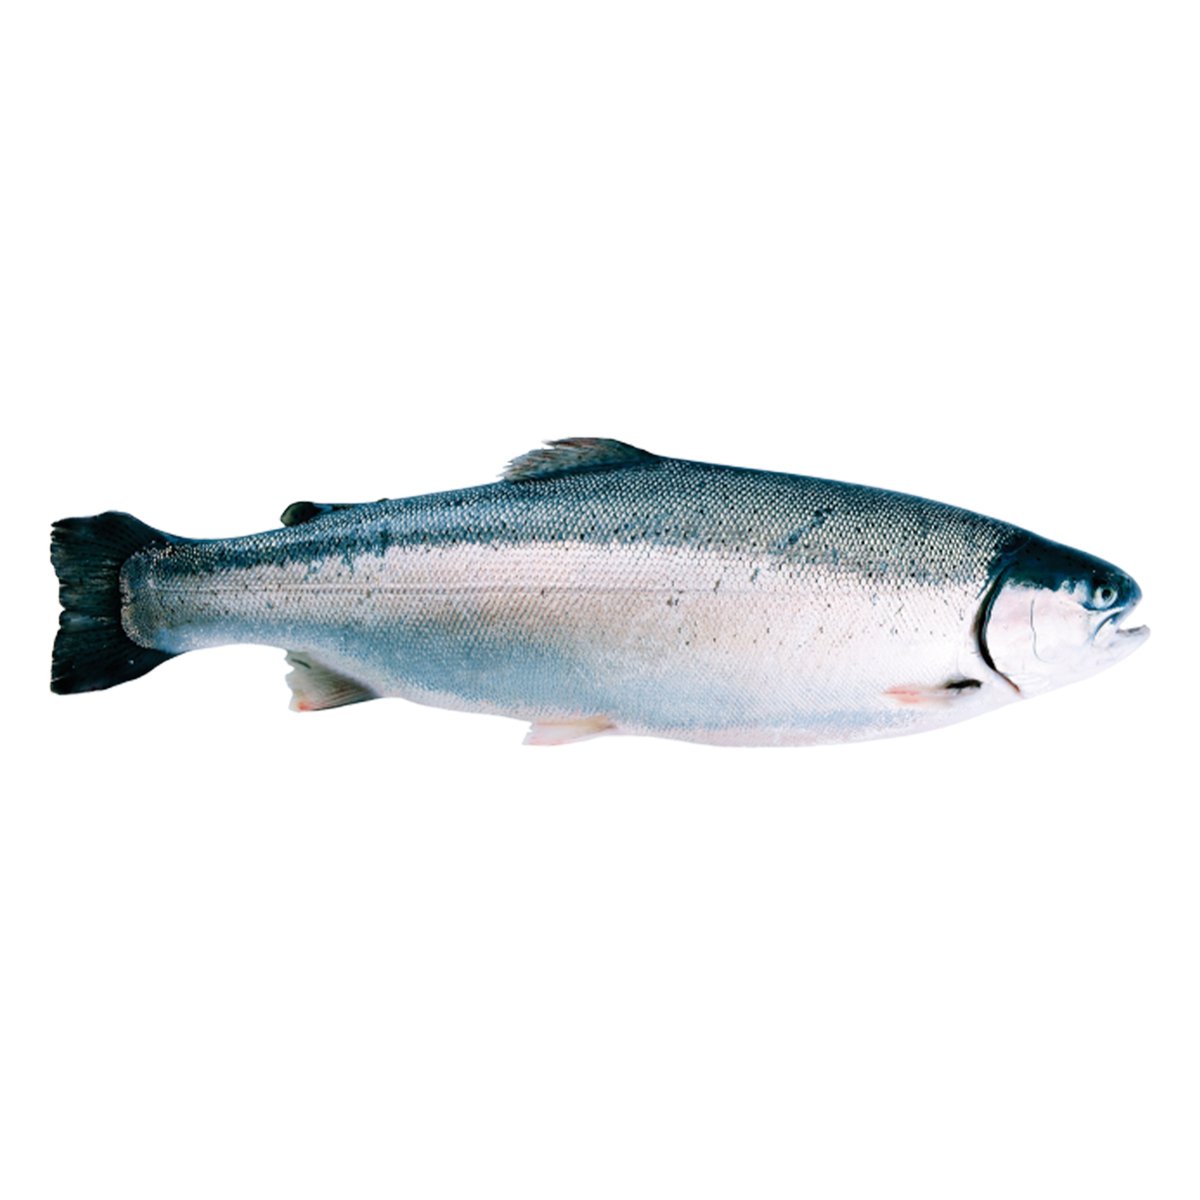 سمك تراوت المضيق النرويجي كامل 4.5 كجم